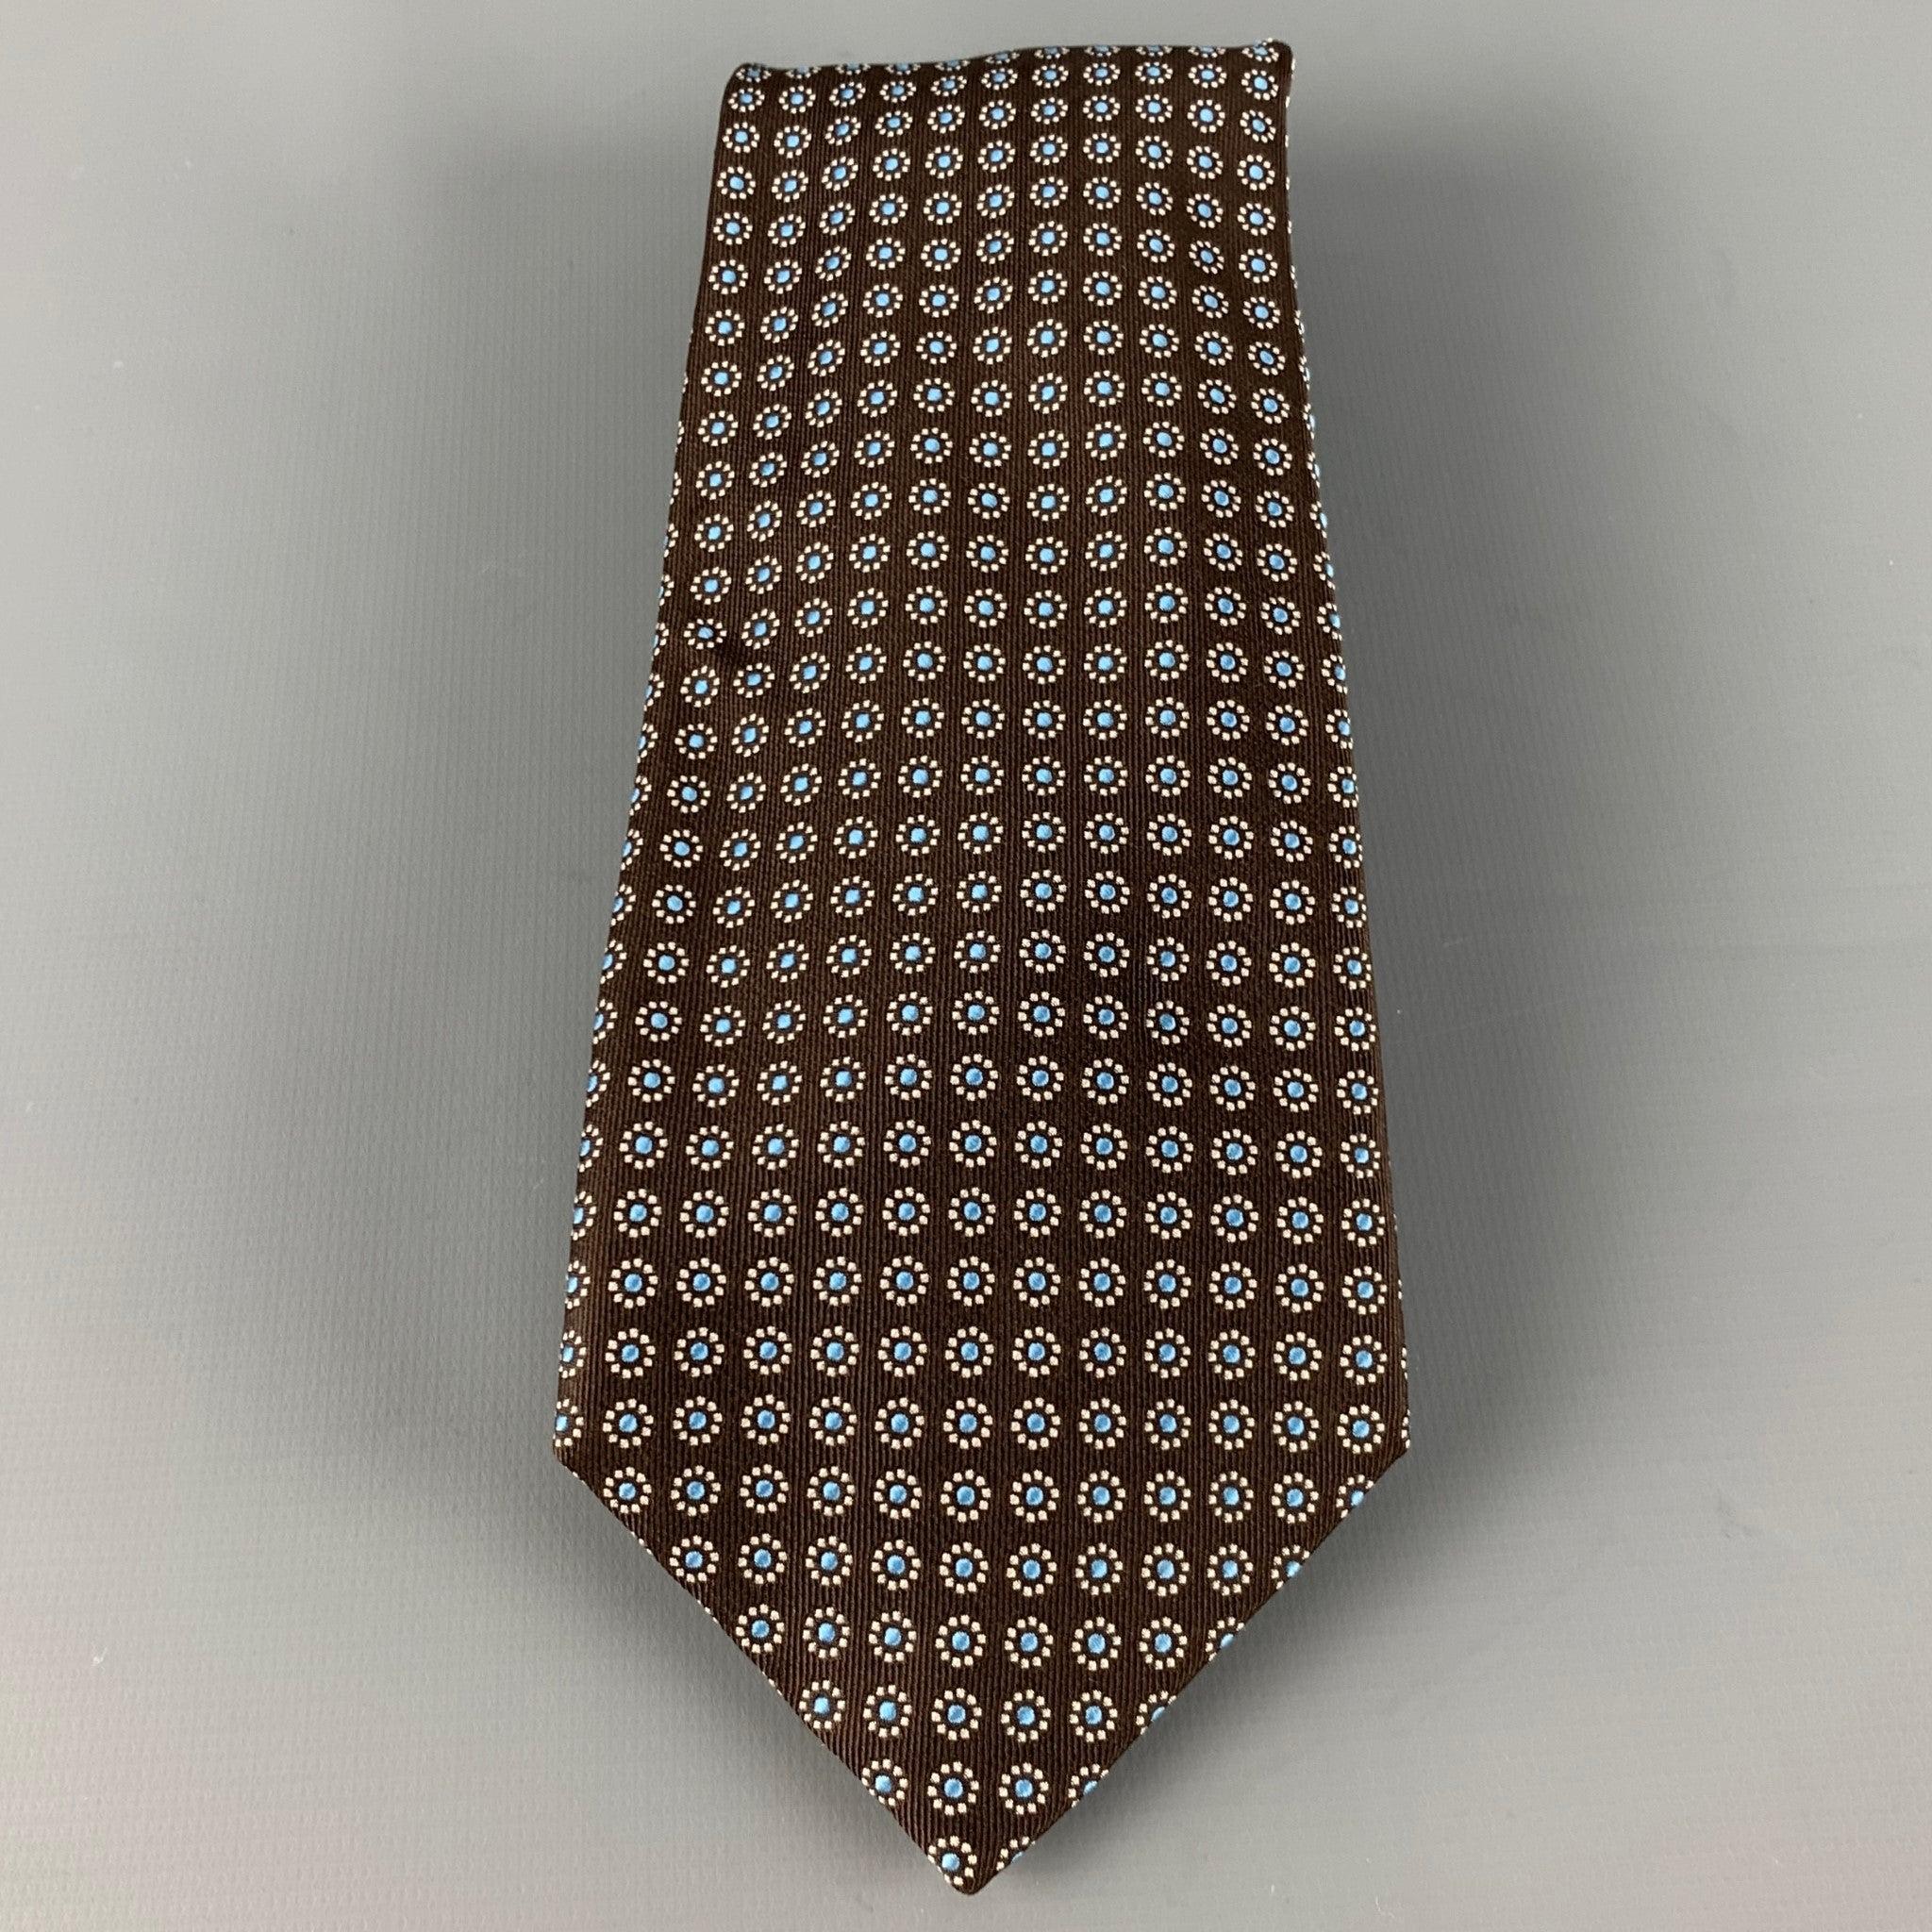 BARNEY'S NEW YORK
cravate en soie brune, présentant un motif floral abstrait blanc et bleu clair. Fabriqué à la main en Italie. Très bon état. 

Mesures : 
  Largeur : 3,5 pouces Longueur : 61 pouces 
  
  
 
Référence : 126588
Catégorie :